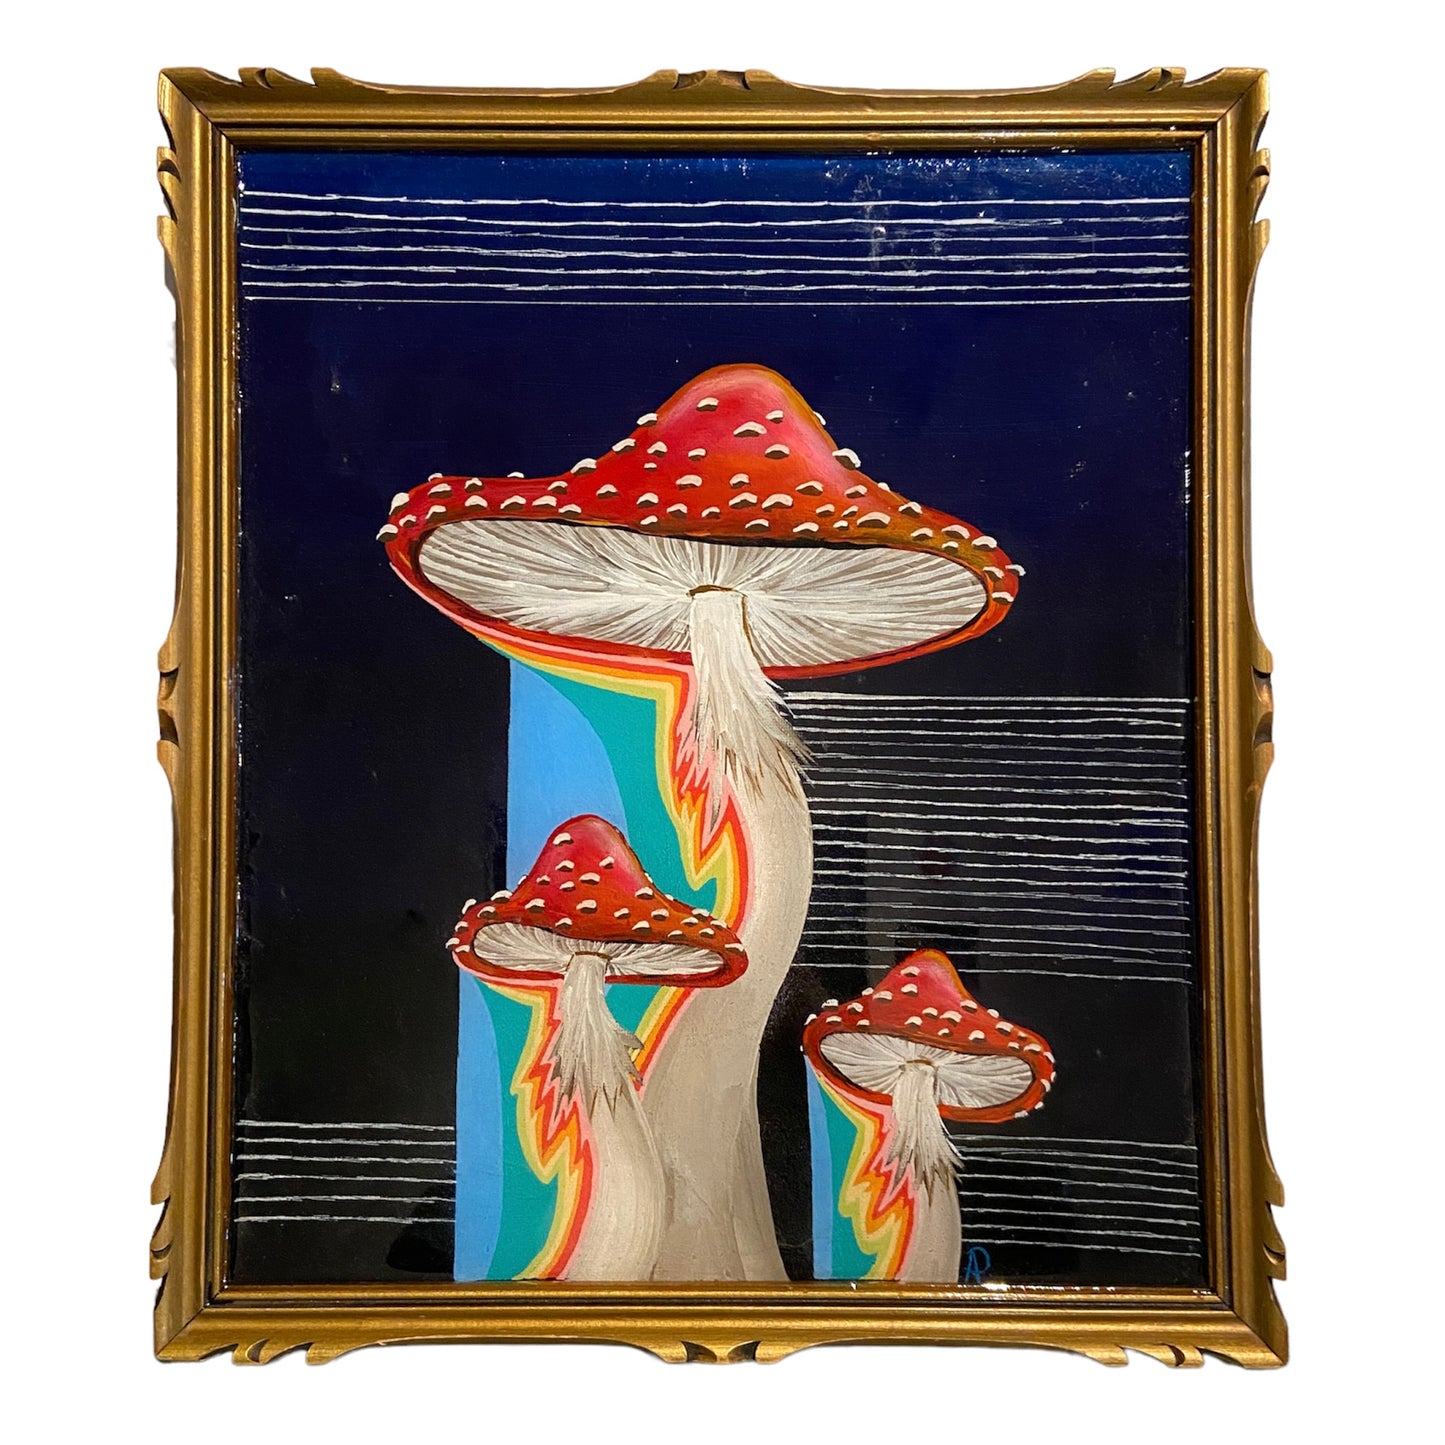 Amber Petersen's Mycelium II